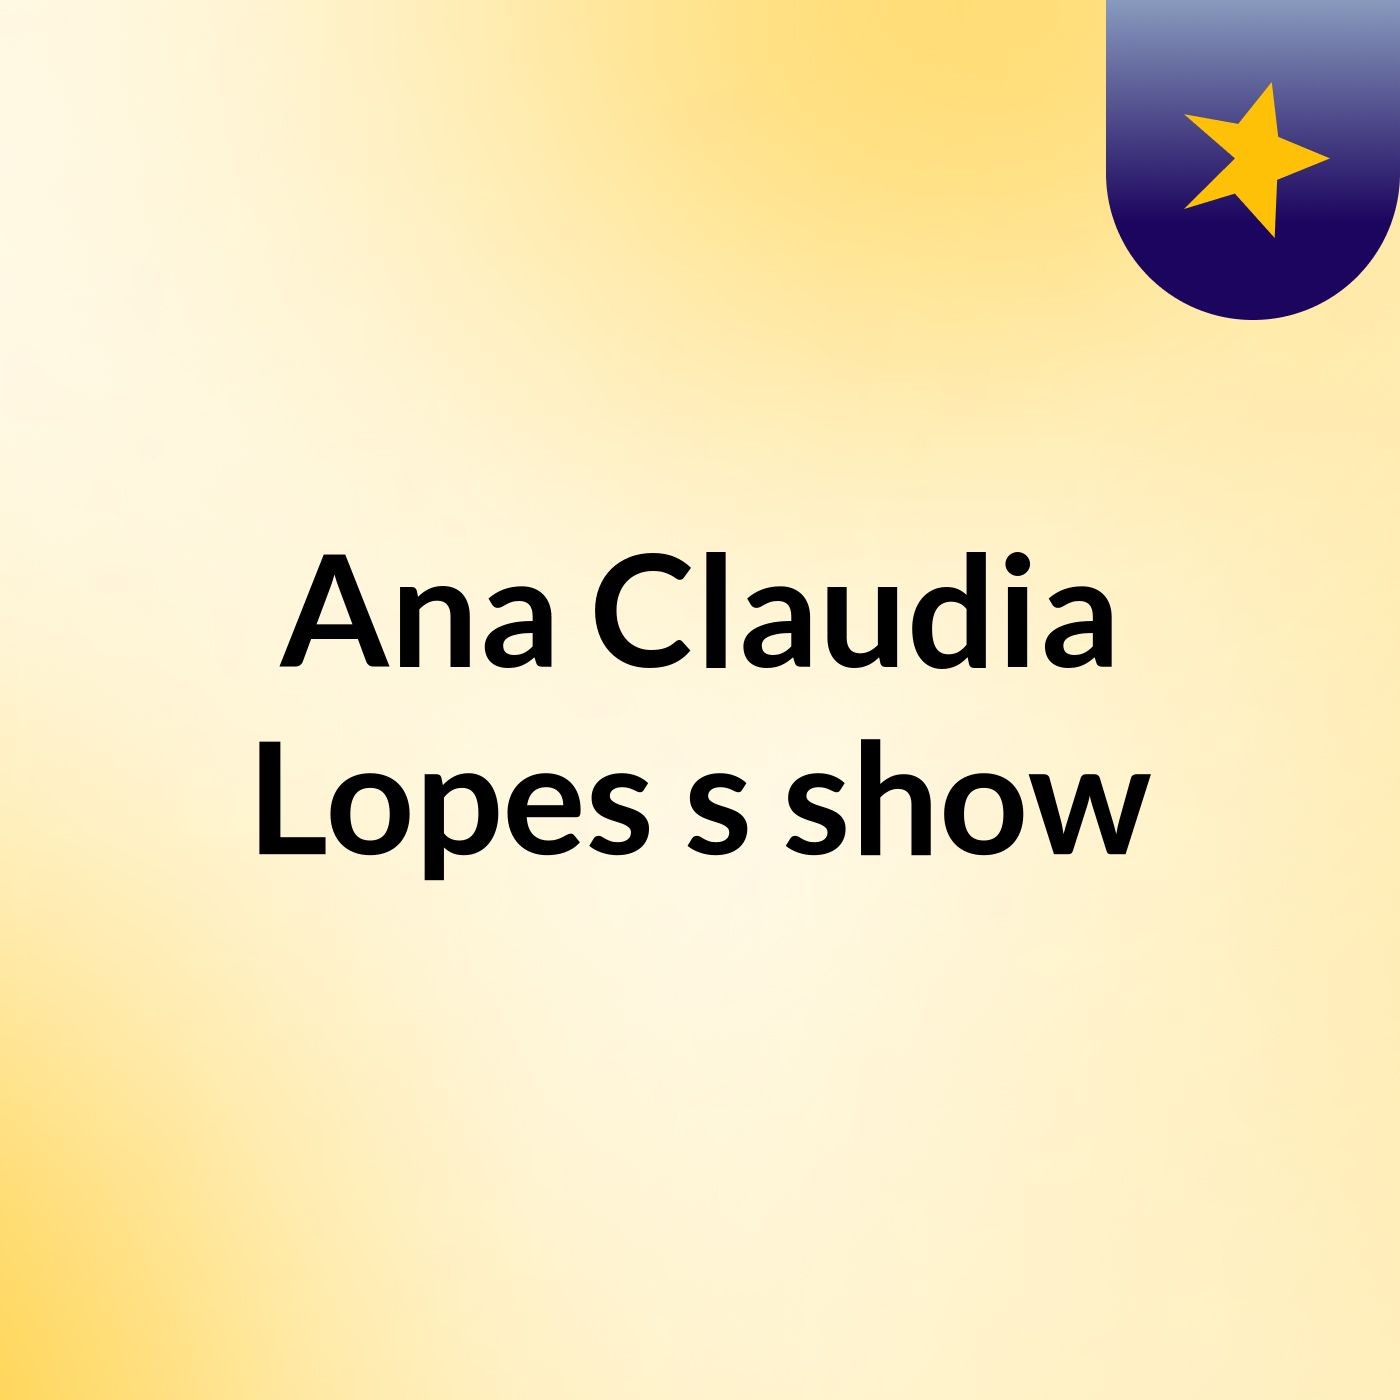 Ana Claudia Lopes's show